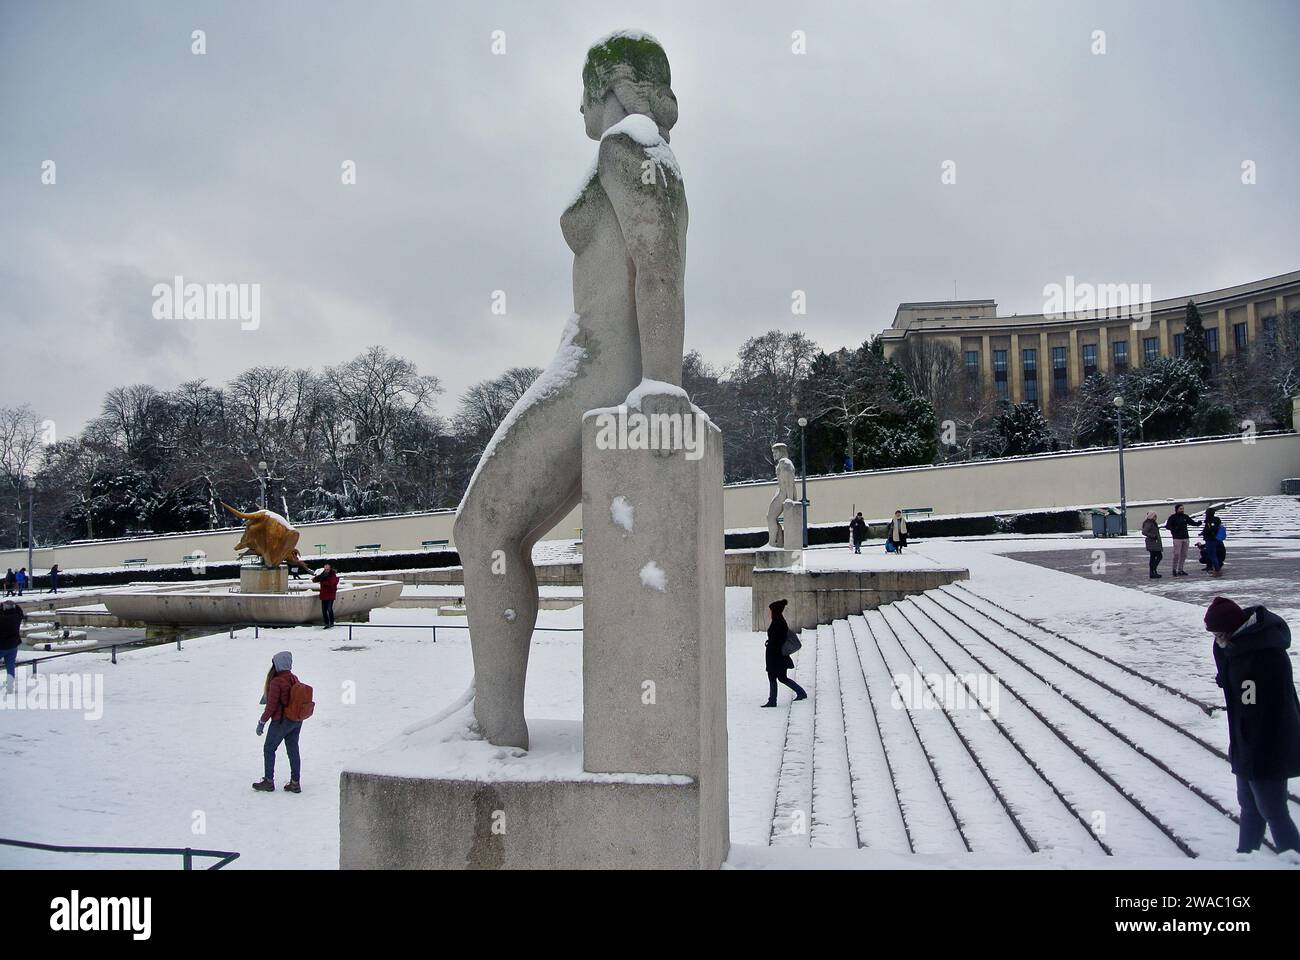 Neige inattendue à Paris. Jardin du Trocadéro. Les sculptures en pierre « Homme » et « Femme » sont recouvertes de neige. Banque D'Images